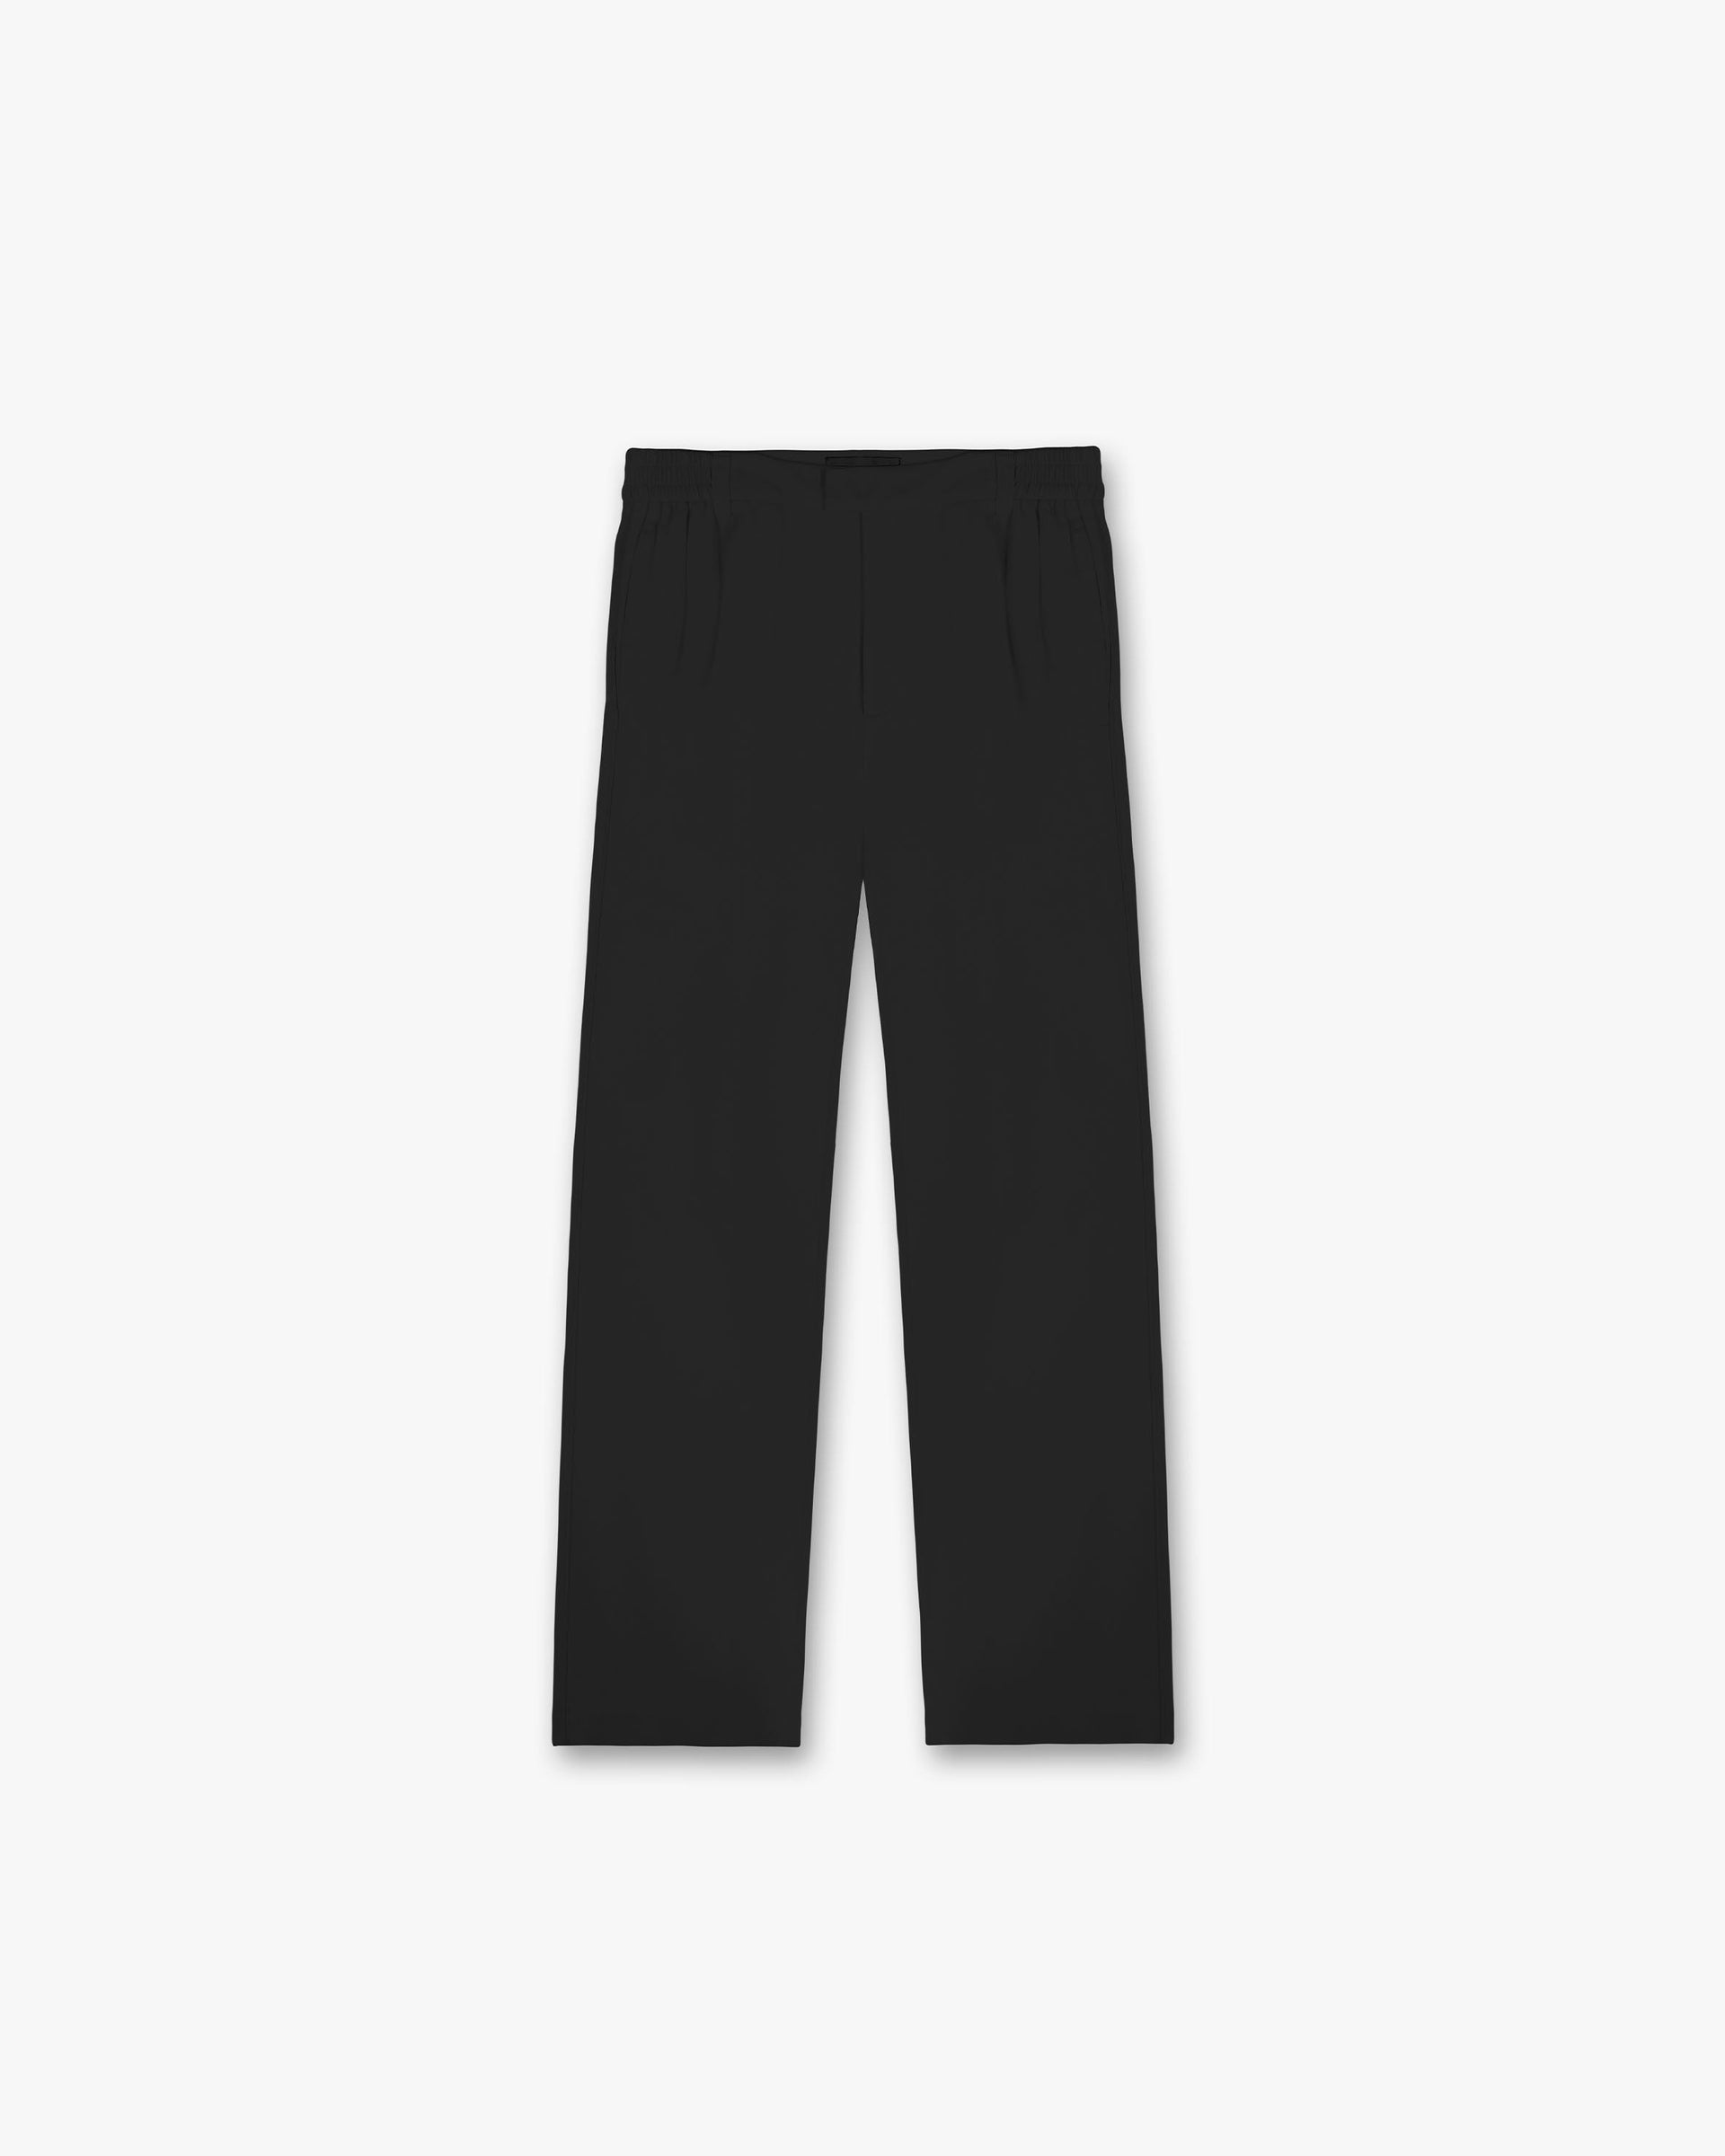 Yacht Pant | Black Pants SC23 | Represent Clo